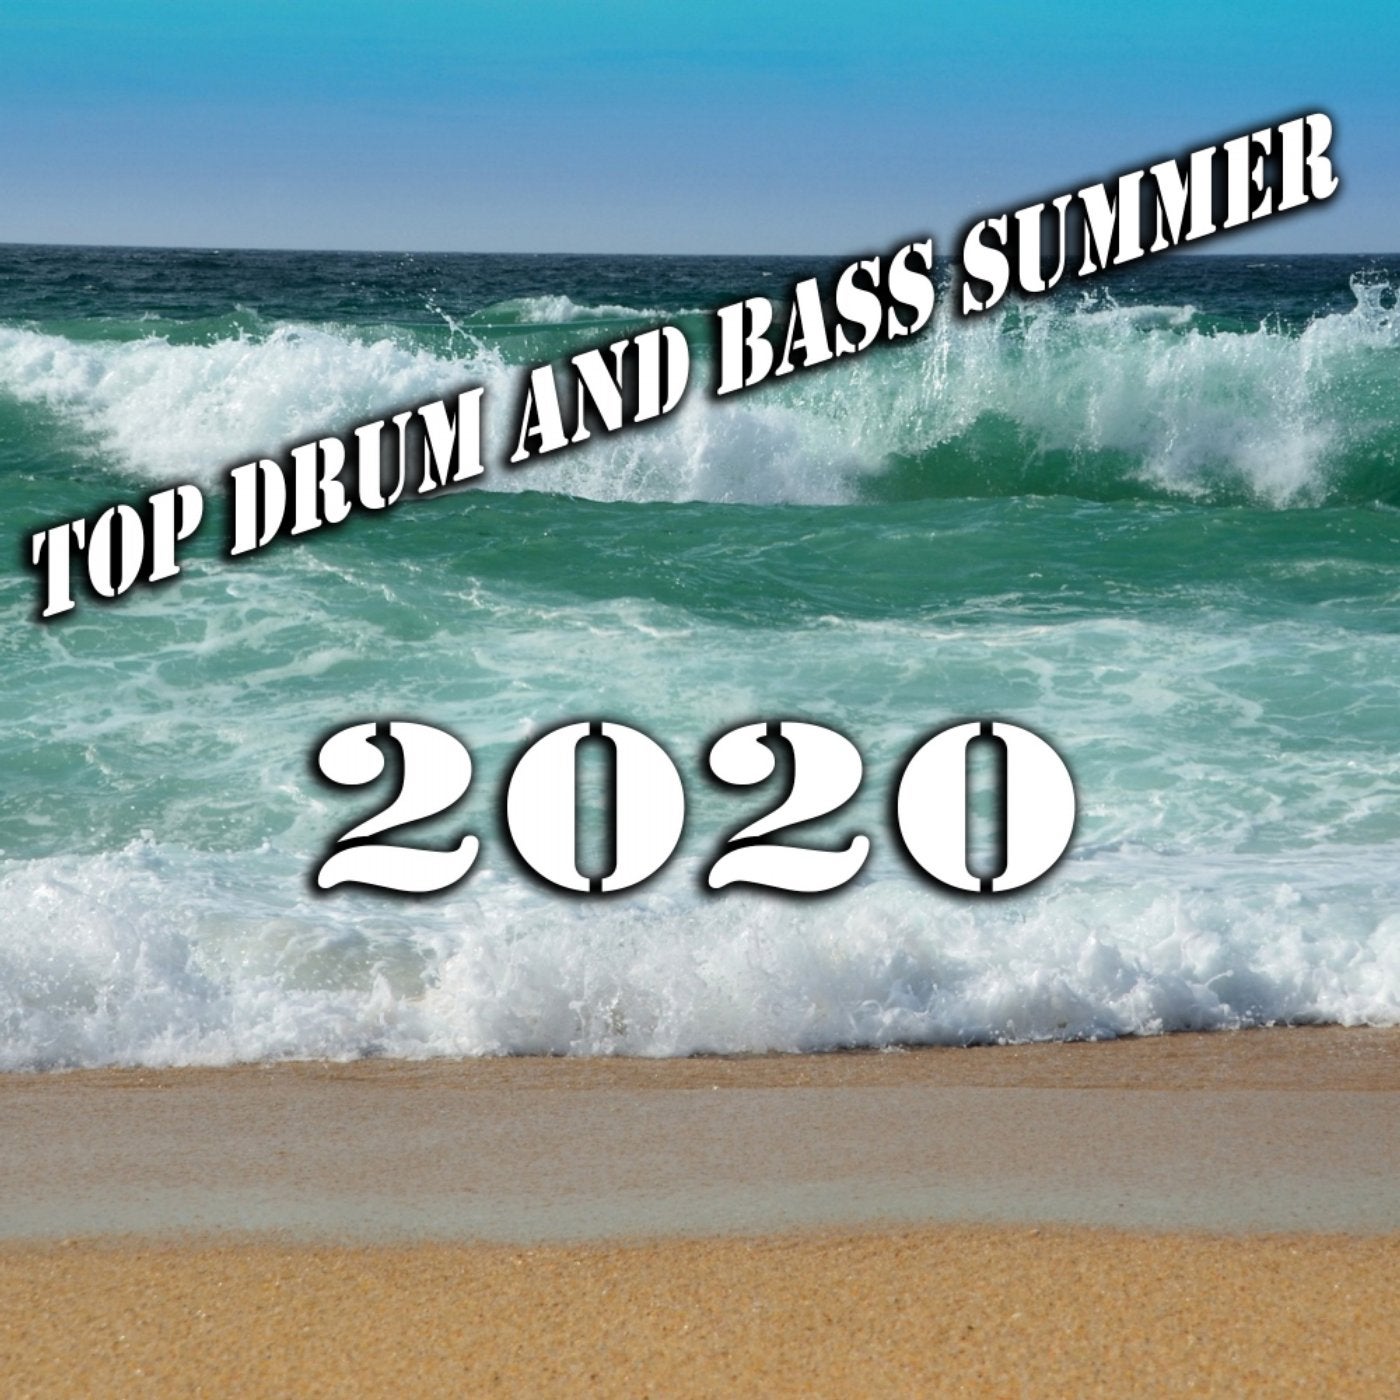 Top Drum & Bass Summer 2020